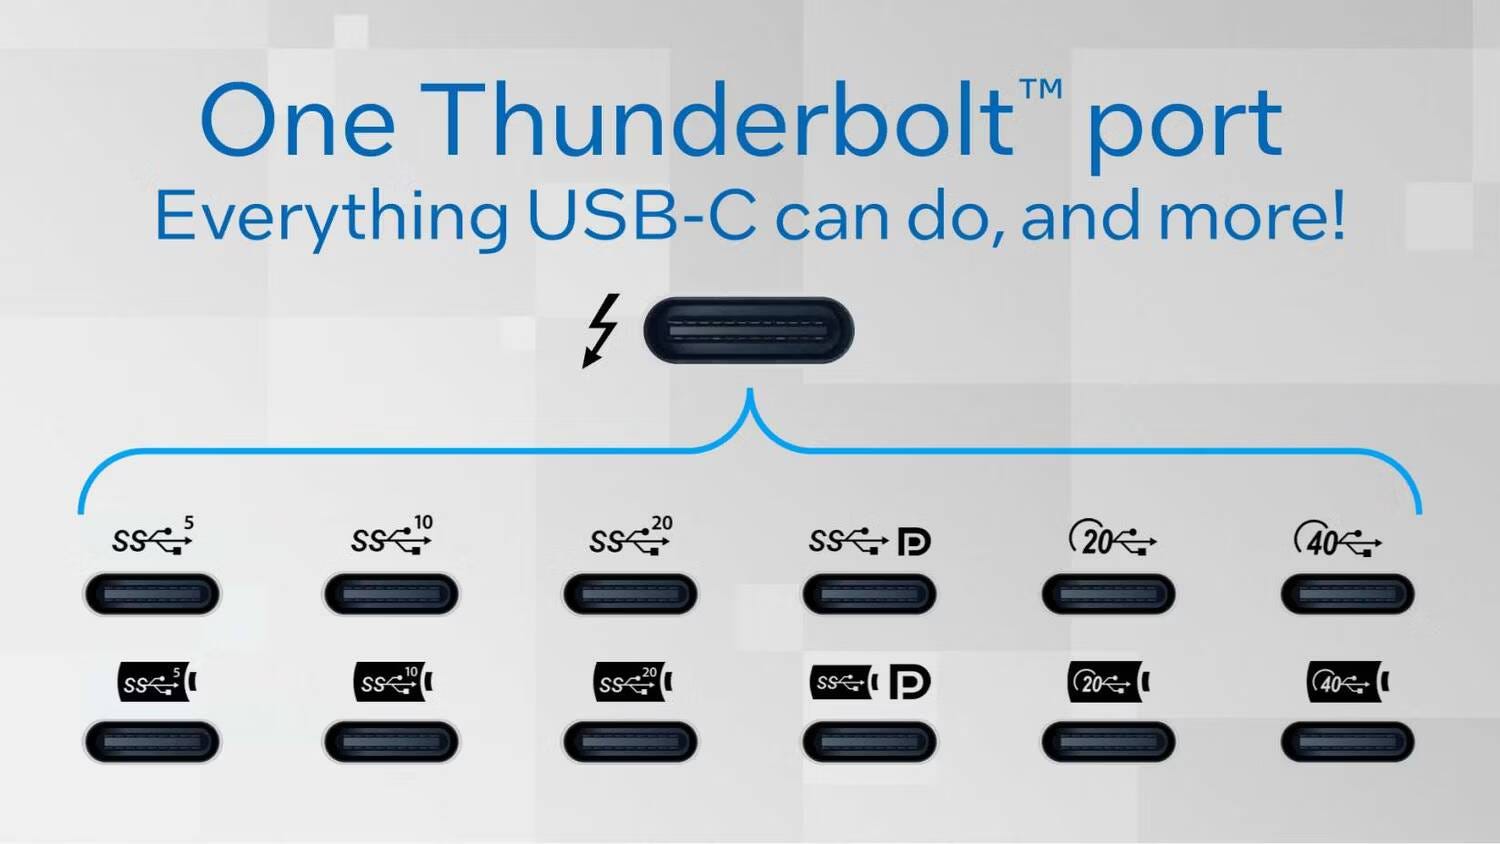 مُقارنة بين USB4 و Thunderbolt 4: توضيح أوجه التشابه والاختلاف - شروحات